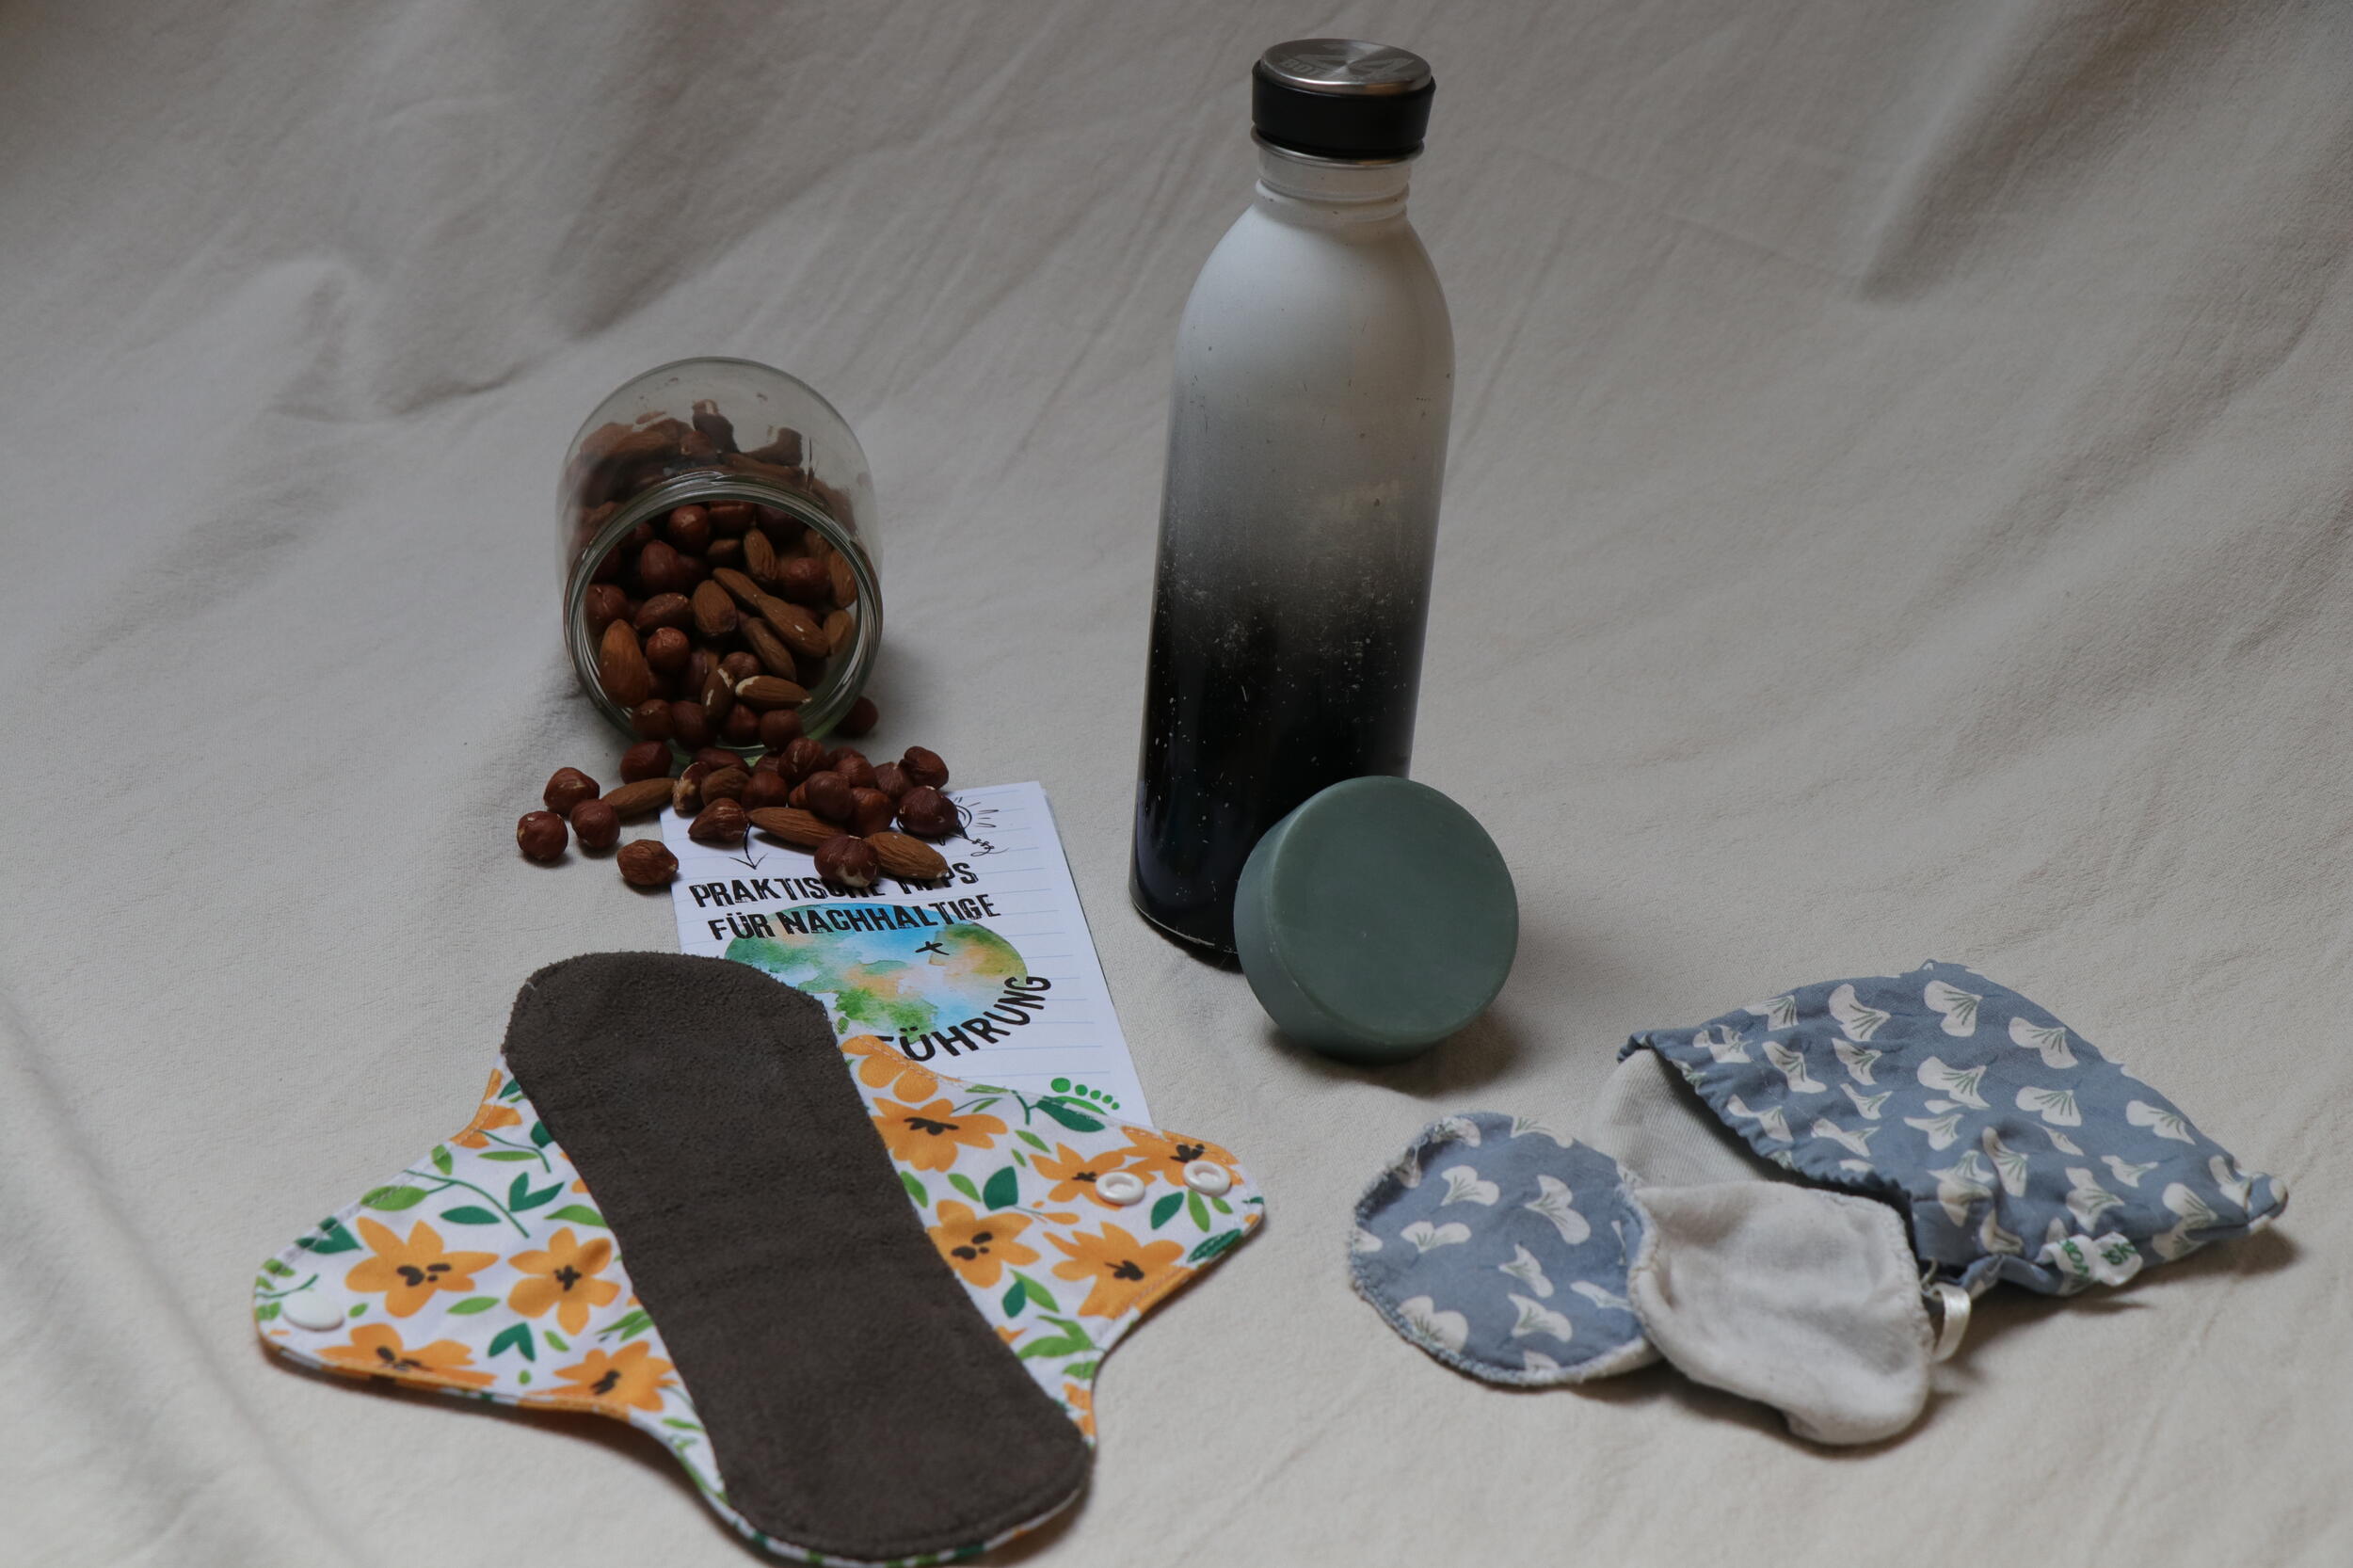 Nüsse in einem Glas, eine wiederbefüllbare Trinkflasche, eine wiederverwendbare Binde und andere wiederverwendbare Gegenstände liegen auf einem Tuch